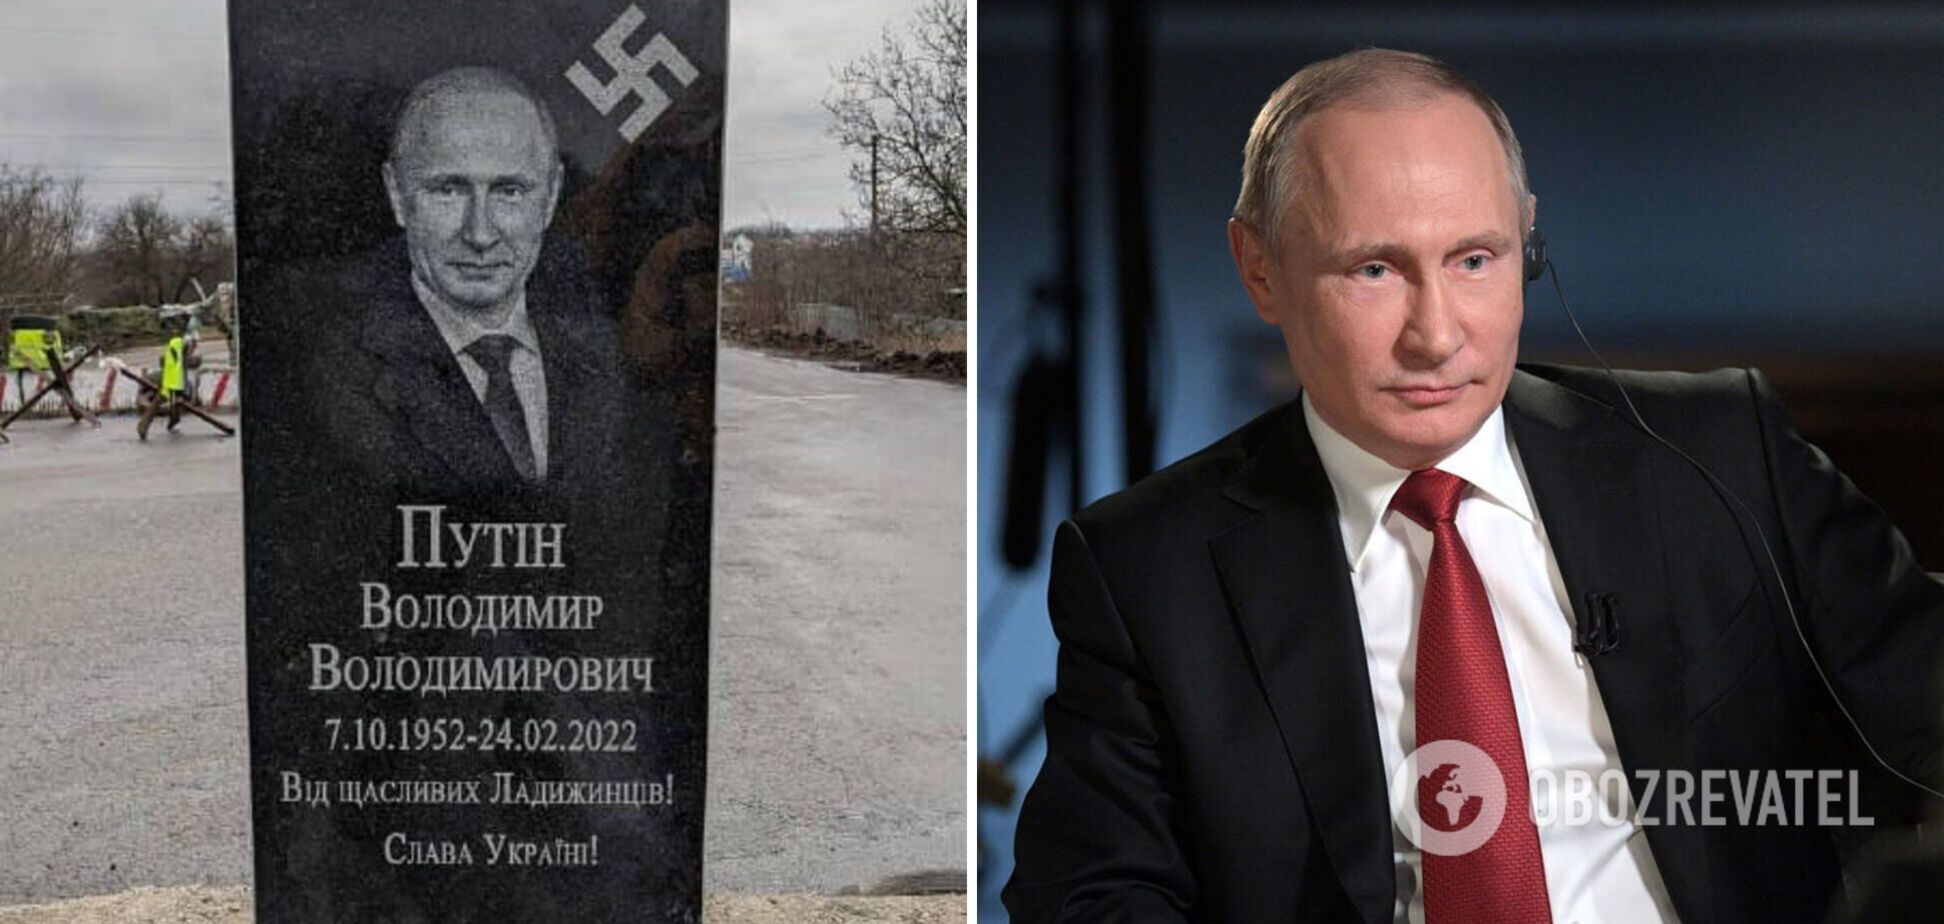 На Винниччине установили надгробие с изображением Путина. Фото